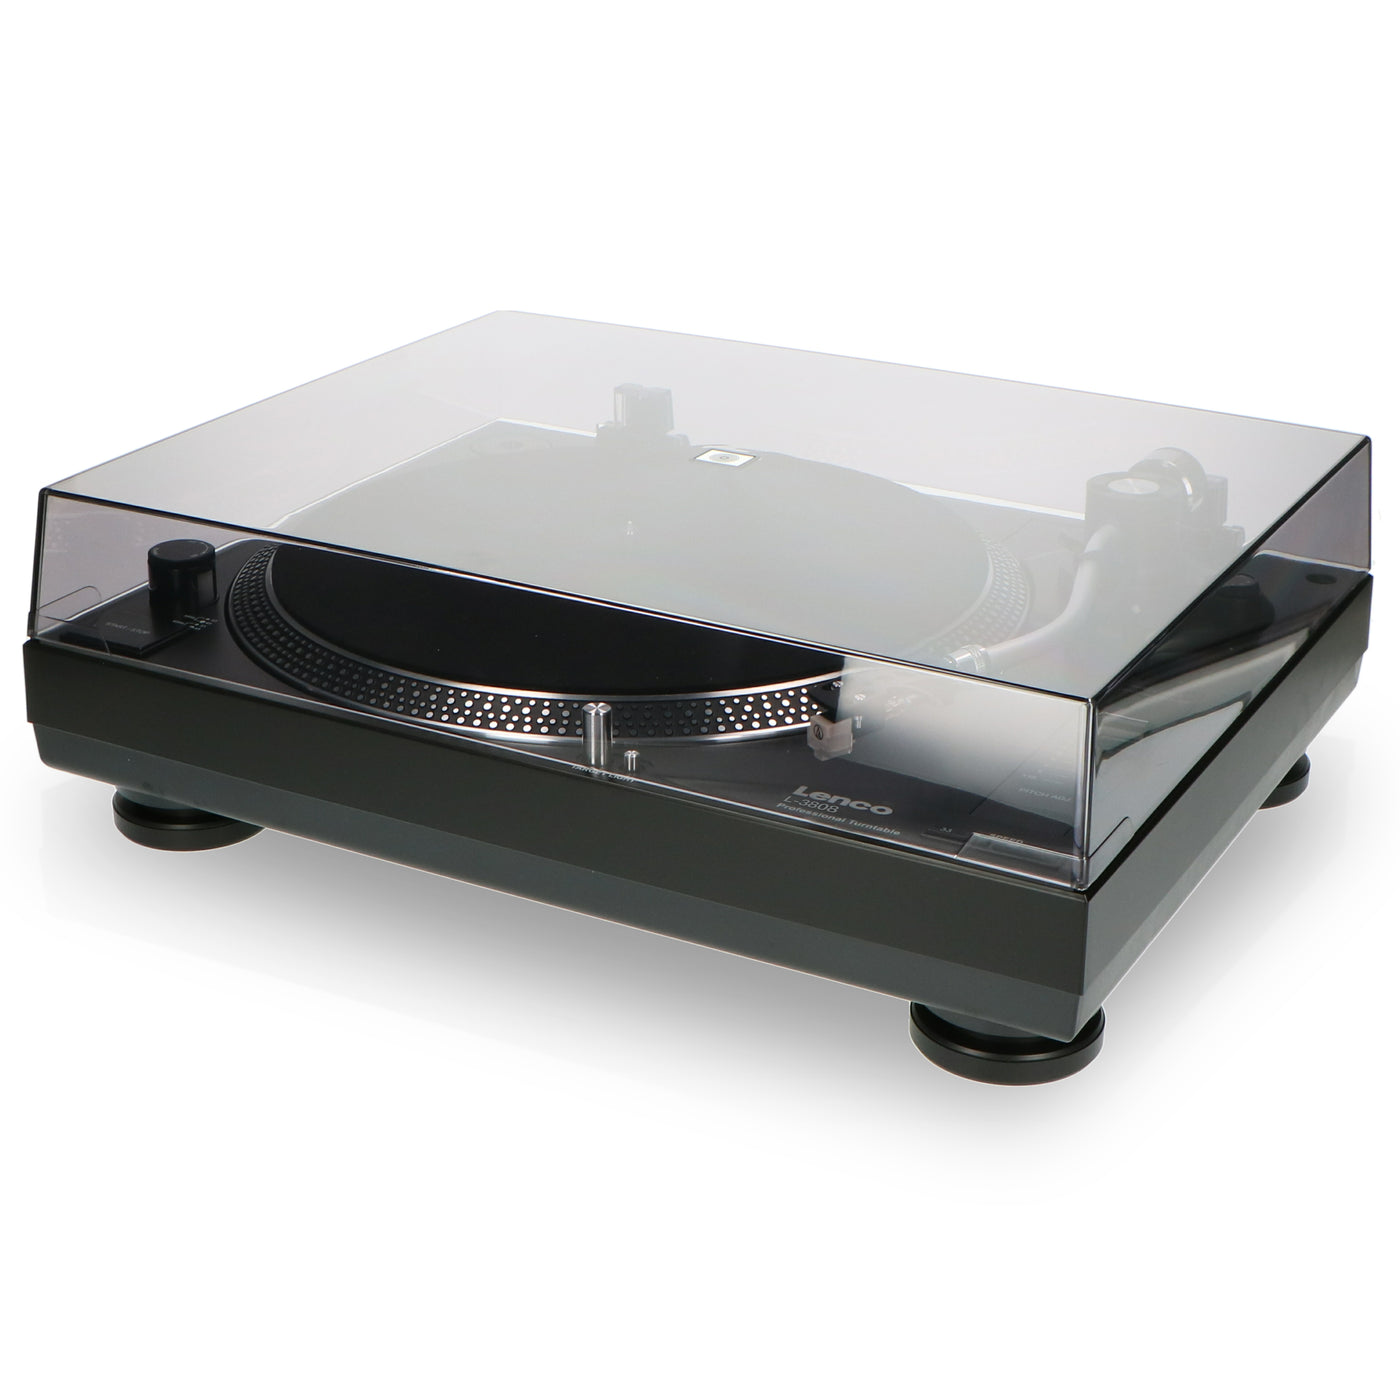 LENCO L-3808 Black - Direct aangedreven Platenspeler met USB/PC encoding - Zwart